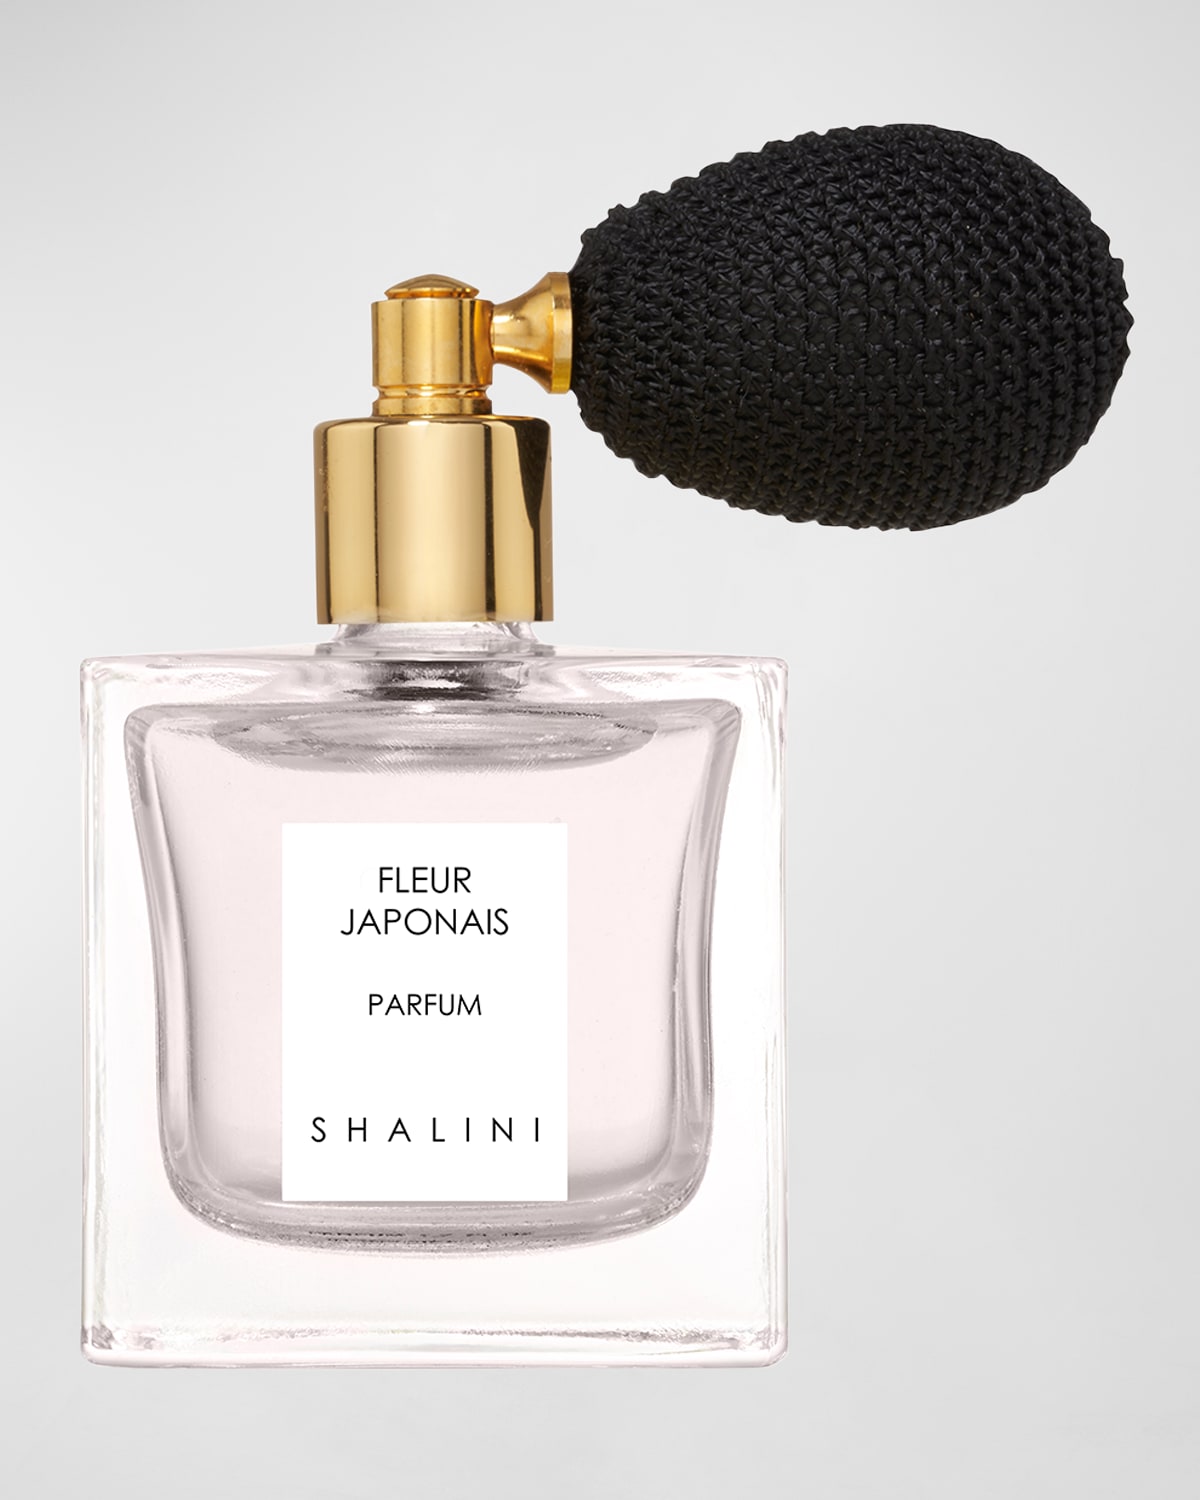 Fleur Japonais Parfum with Black Bulb Atomizer